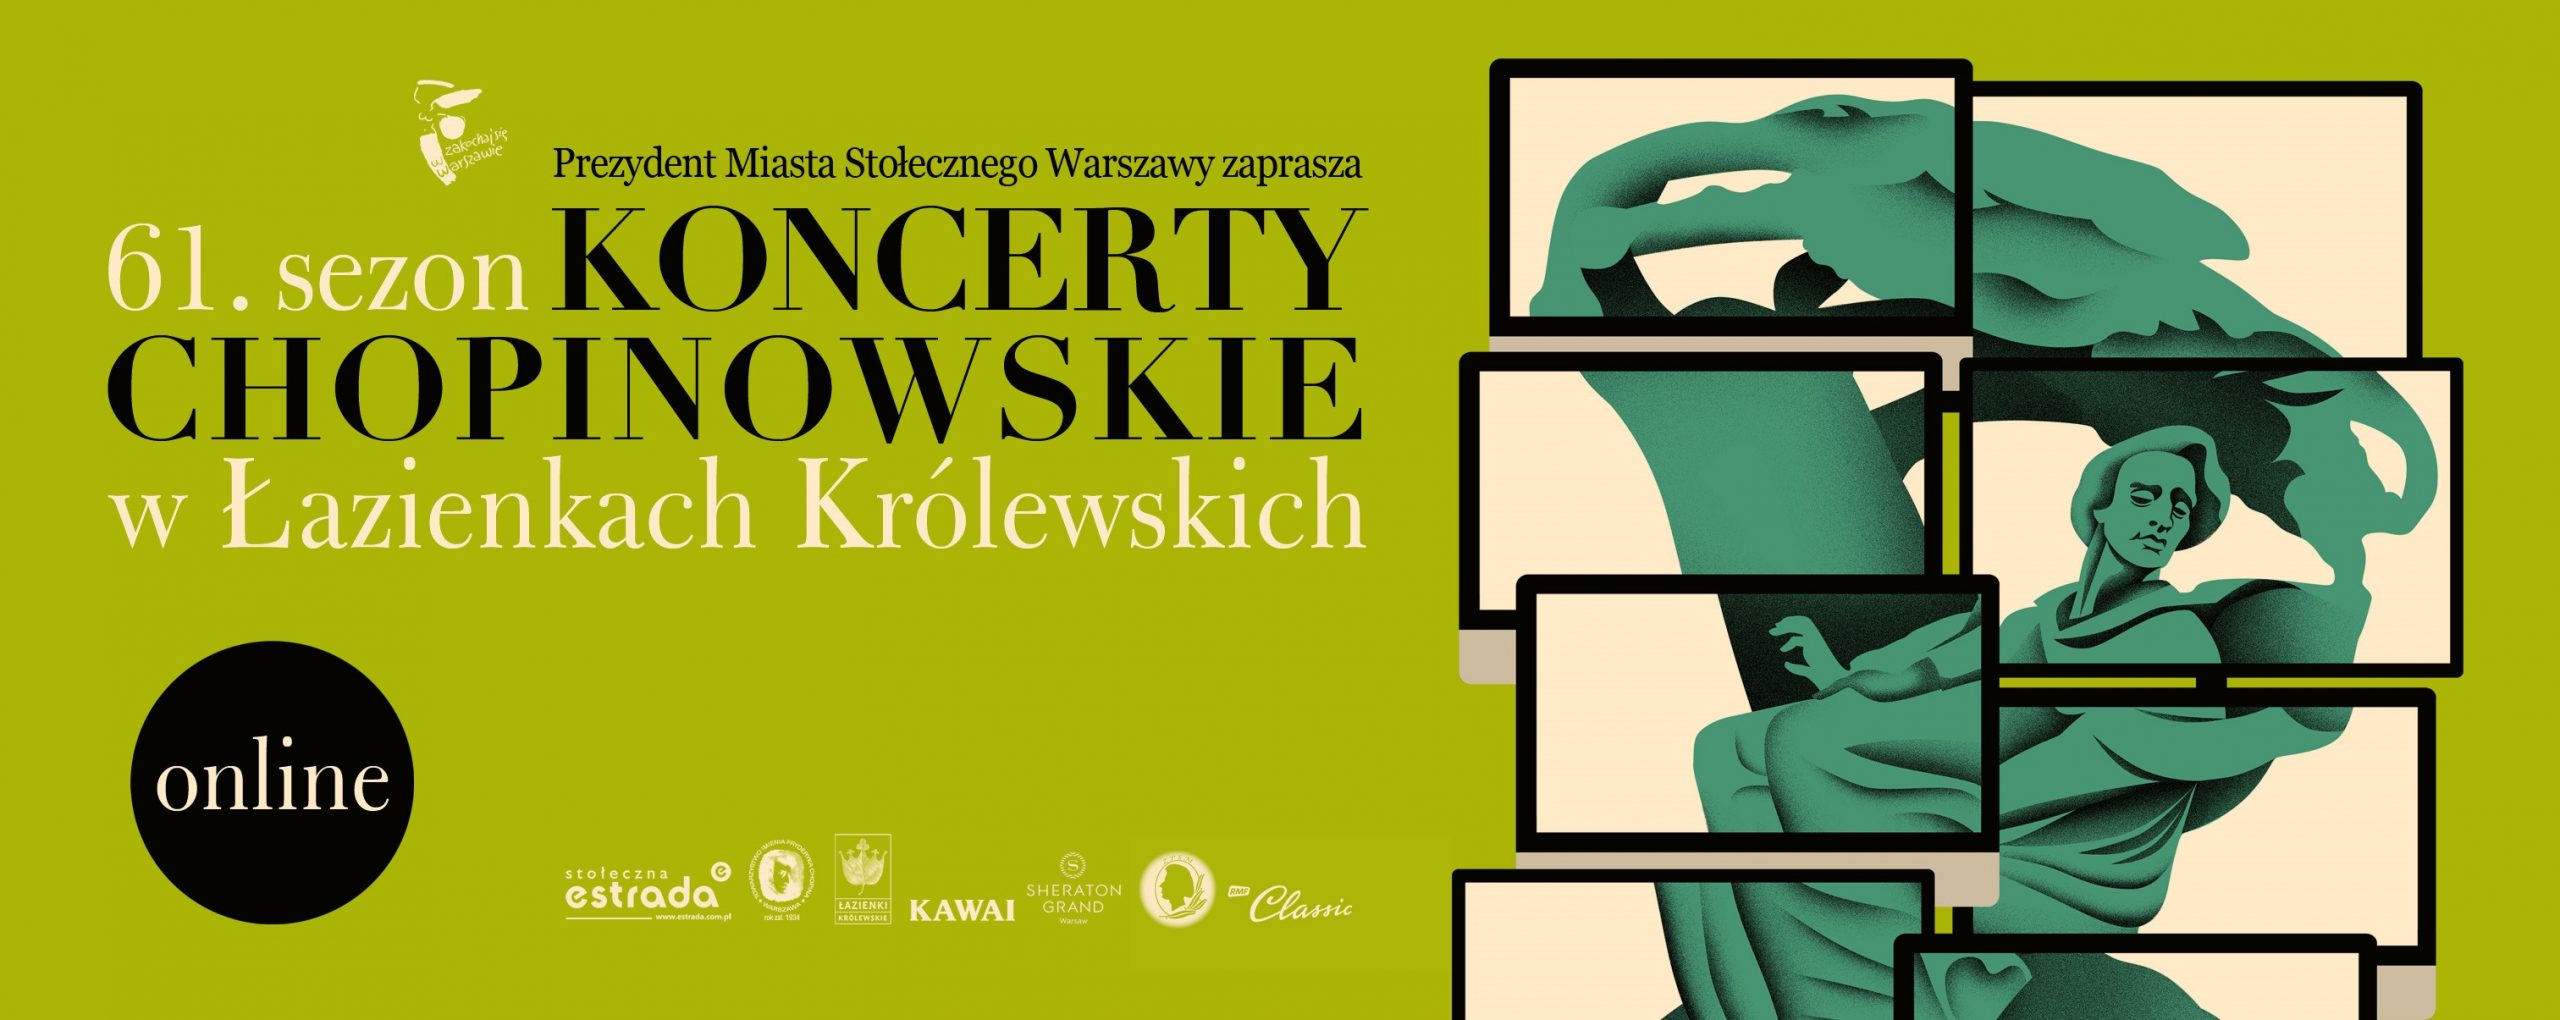 Koncerty Chopinowskie w Łazienkach Królewskich online - Karol Radziwonowicz - Chopin concert